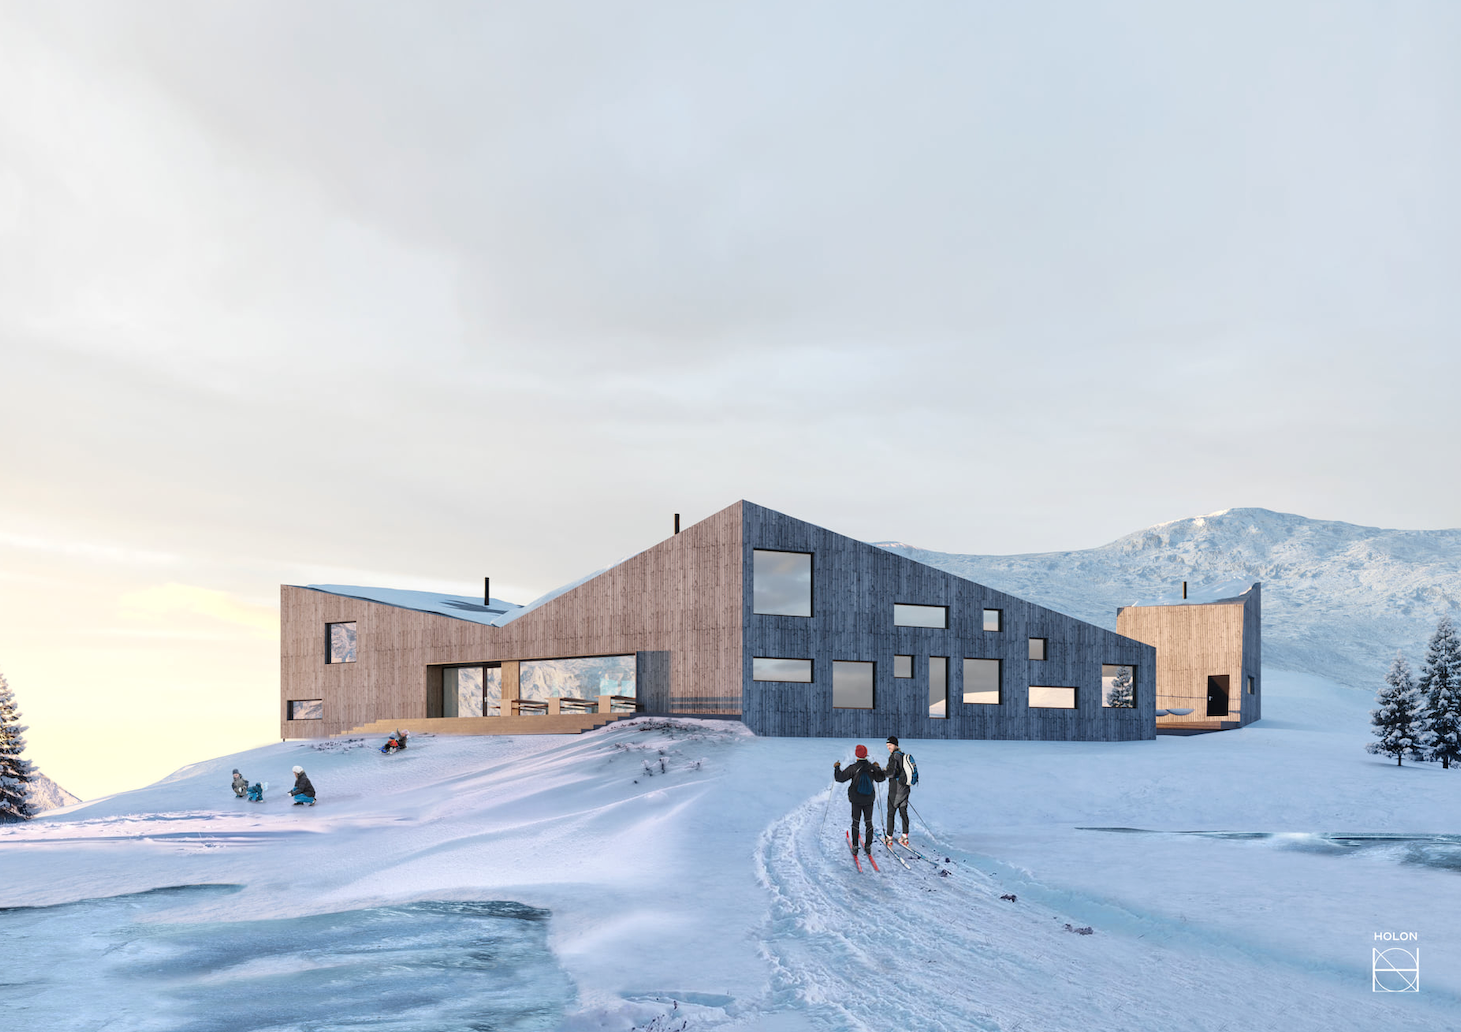 Turistforeningen ønsker å bygge ei hytte med bruksareal på 356 kvadratmeter med mønehøyde på 7,2 meter langs stien til Blåfjellenden i Øvstabødalen, eller Hunnedalen som de fleste kaller det.